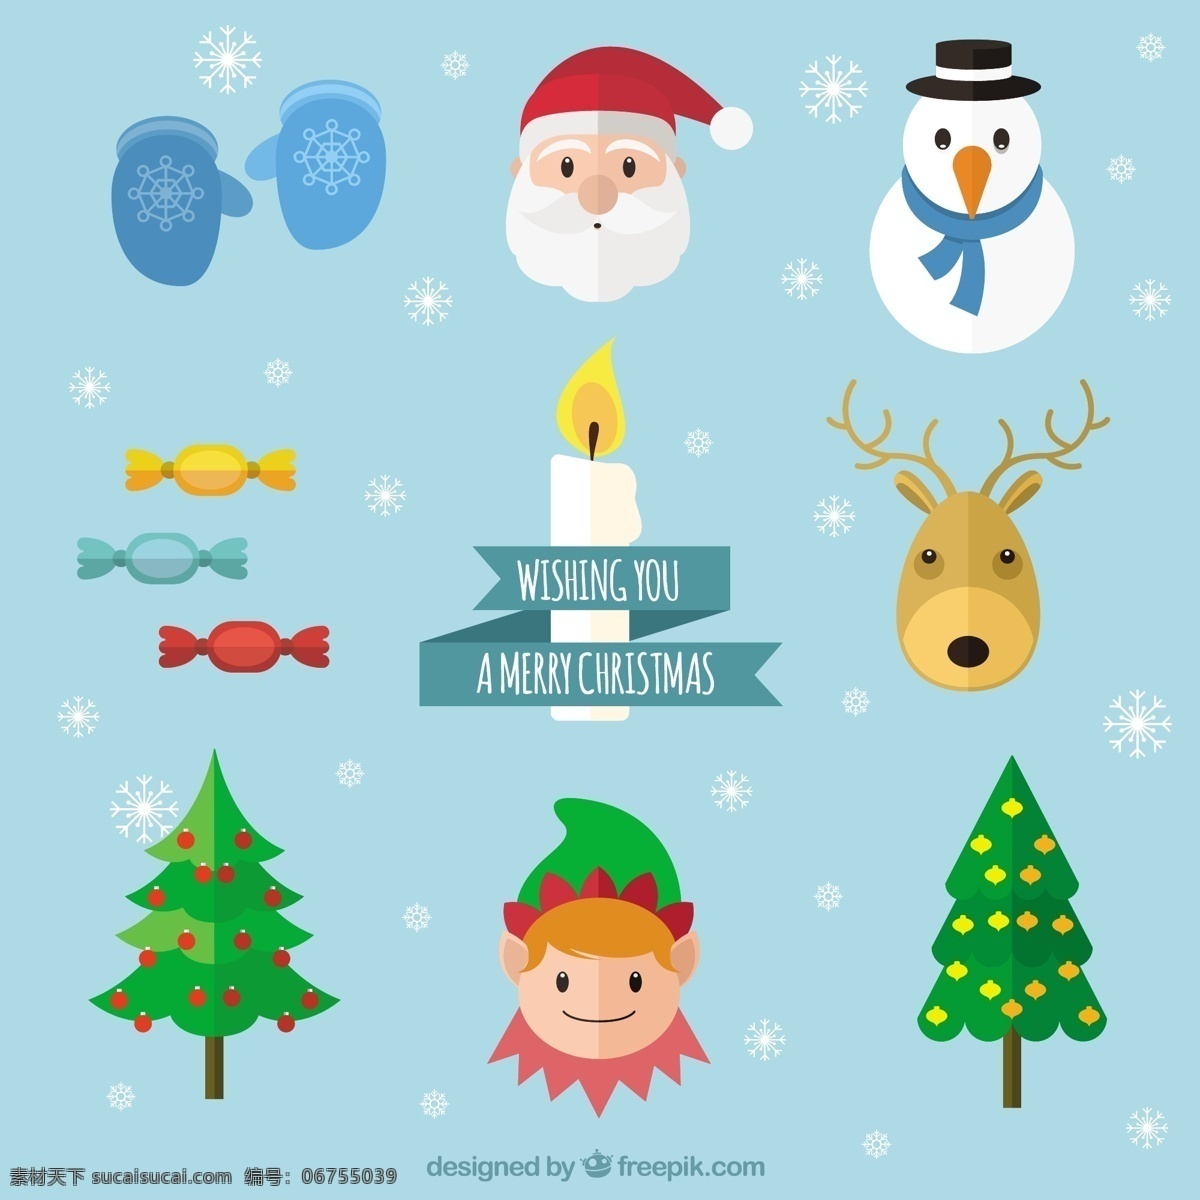 祝你圣诞快乐 圣诞树 新的一年 新年快乐 圣诞快乐 冬天快乐 圣诞克劳斯 圣诞 庆祝活动 新的节日 驯鹿 一年 节日快乐 插画 精灵 手套 青色 天蓝色